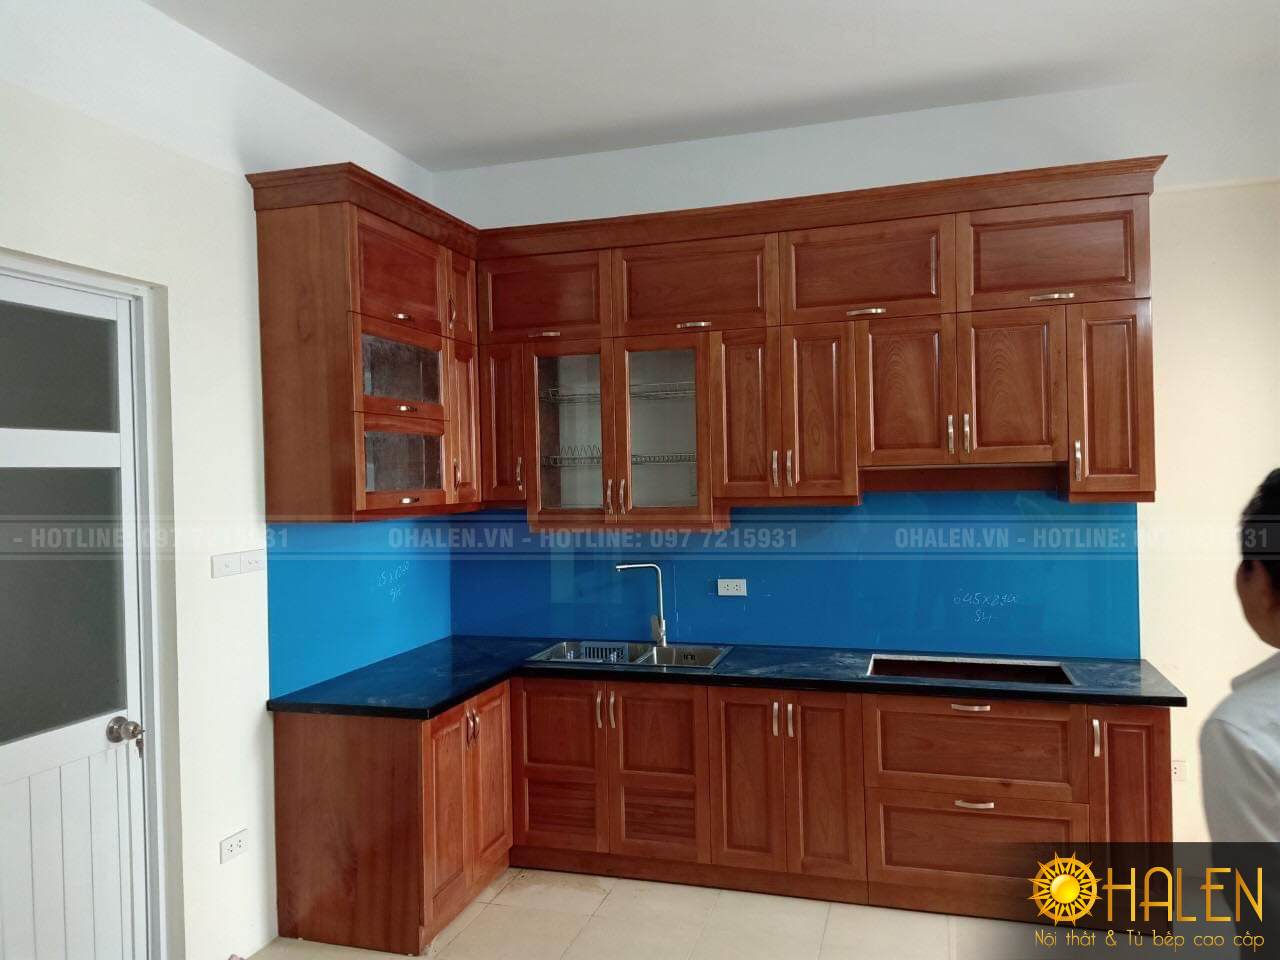 Tủ bếp gỗ xoan đào phun màu cánh gián ấm cúng cùng kính bếp màu xanh cho gia chủ mệnh Mộc